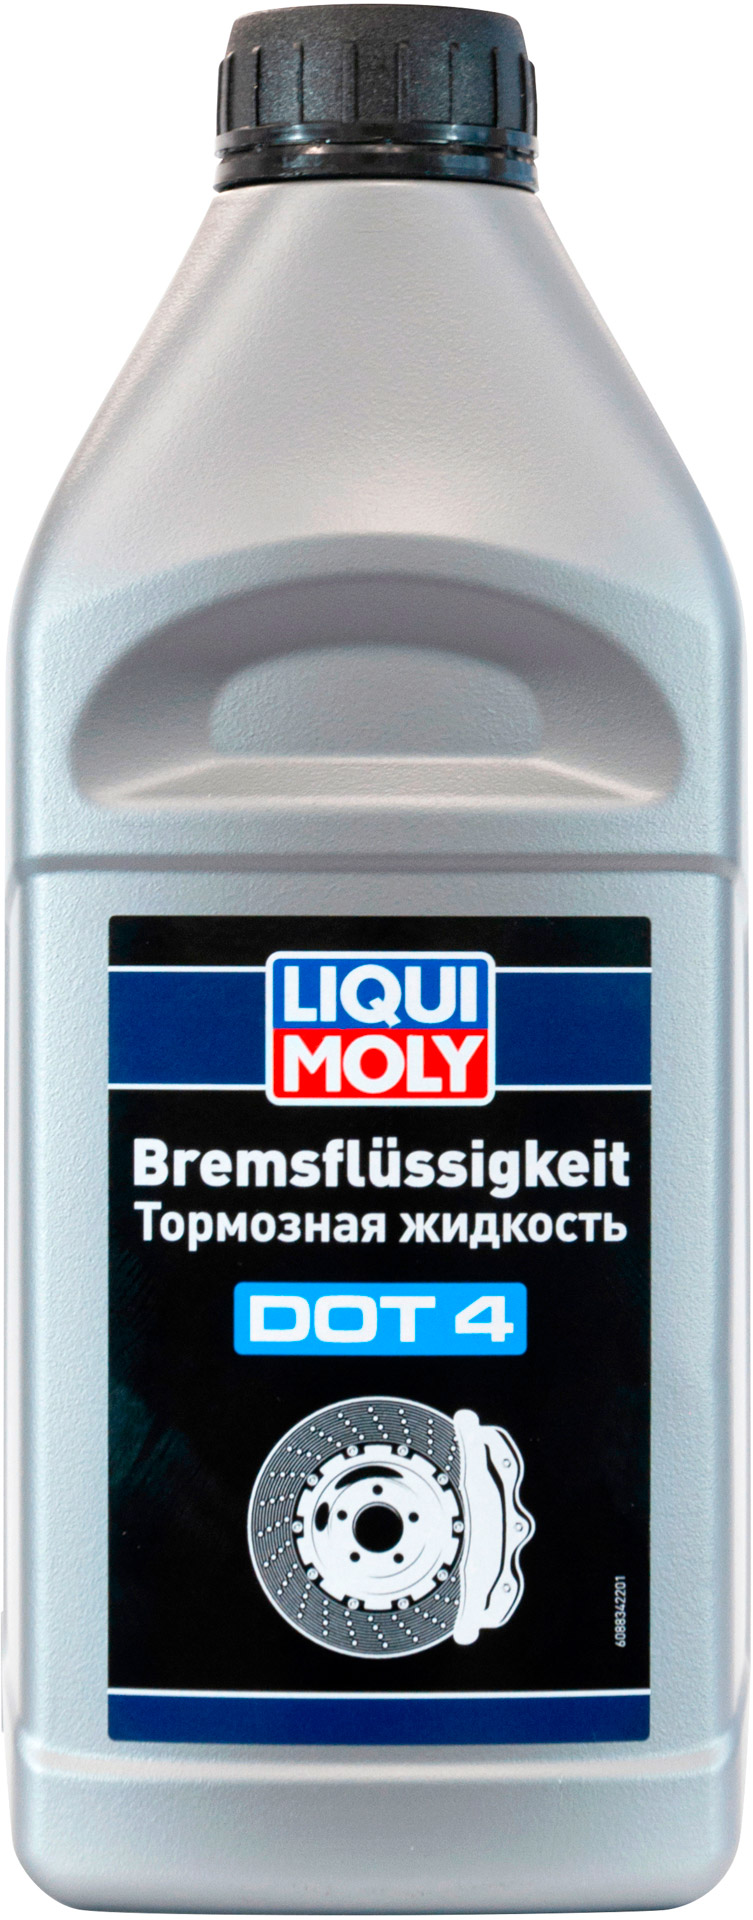 ТОРМОЗНАЯ ЖИДКОСТЬ Тормозная жидкость Liqui Moly Bremsflussigkeit DOT 4 1л